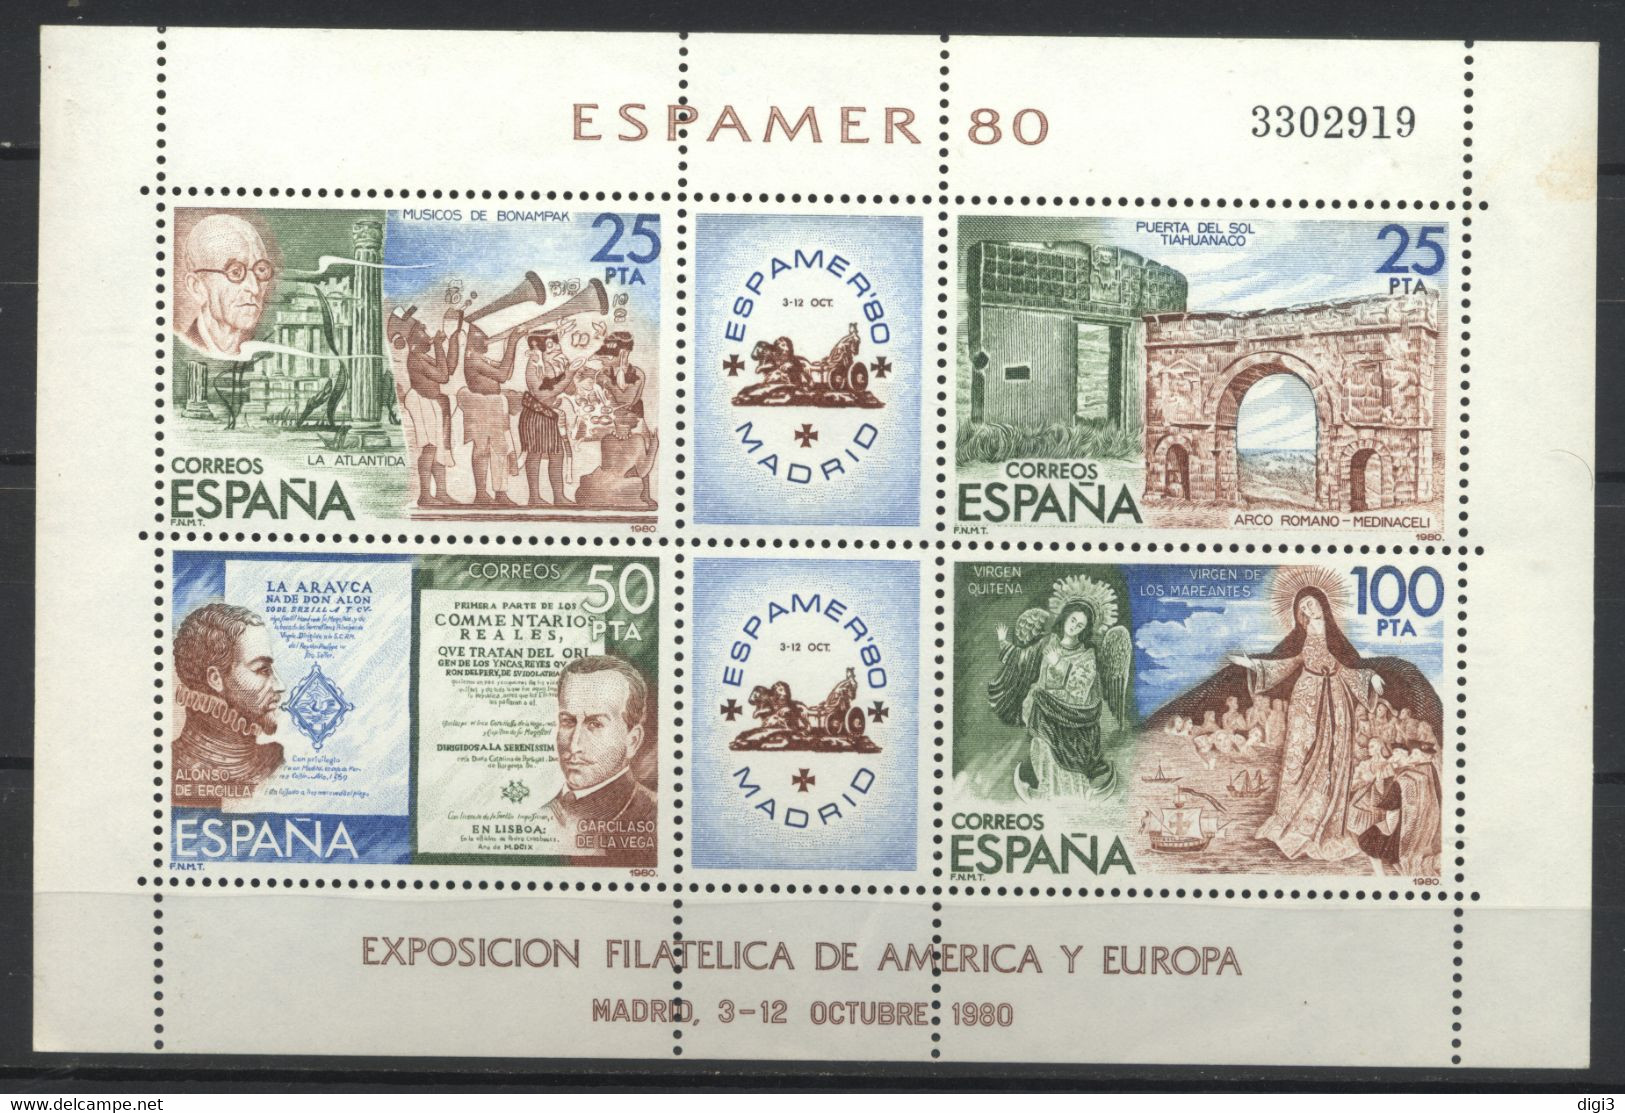 España, 1980, Exposiciòn Filatélica De América Y Europa, ESPAMER 80, Hojita, MNH** - Feuillets Souvenir